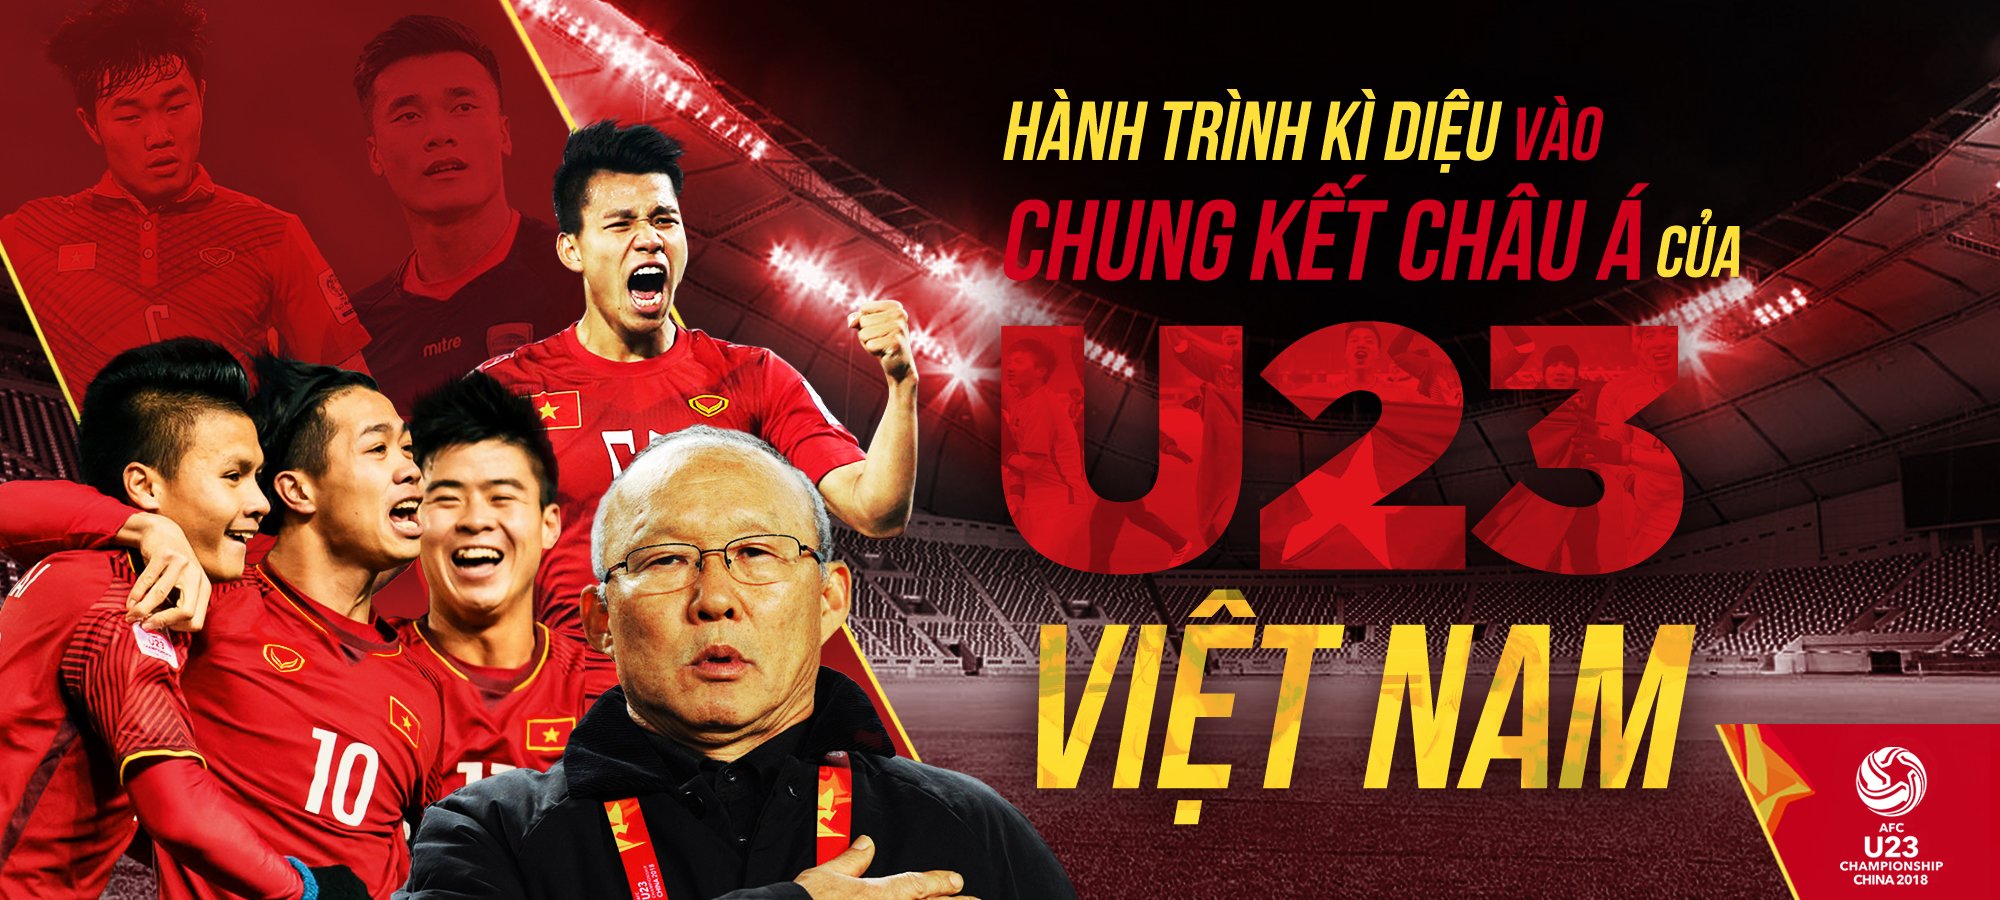 Hành trình kỳ diệu của đội tuyển quốc gia U23 Việt Nam tại VCK U23 châu Á